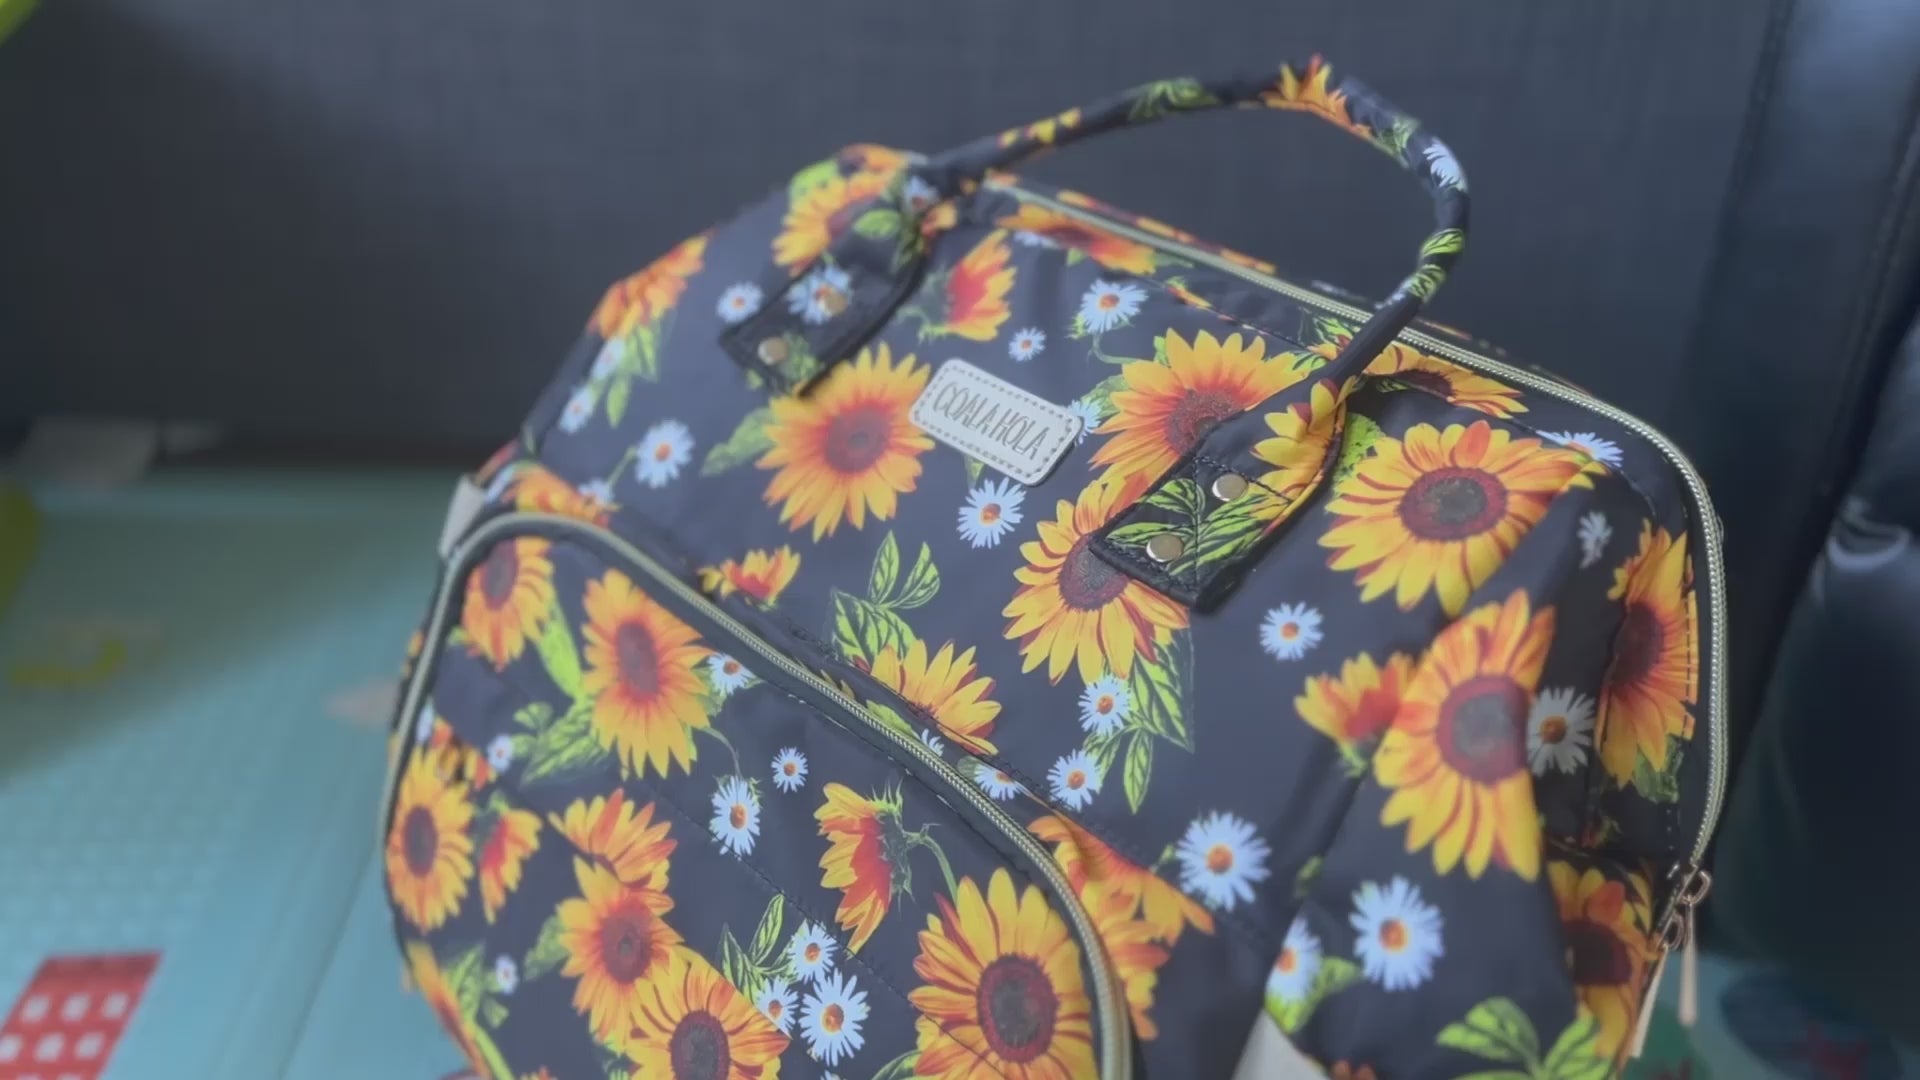 Leopard Sunflower NGIL Diaper Bag/Travel Backpack